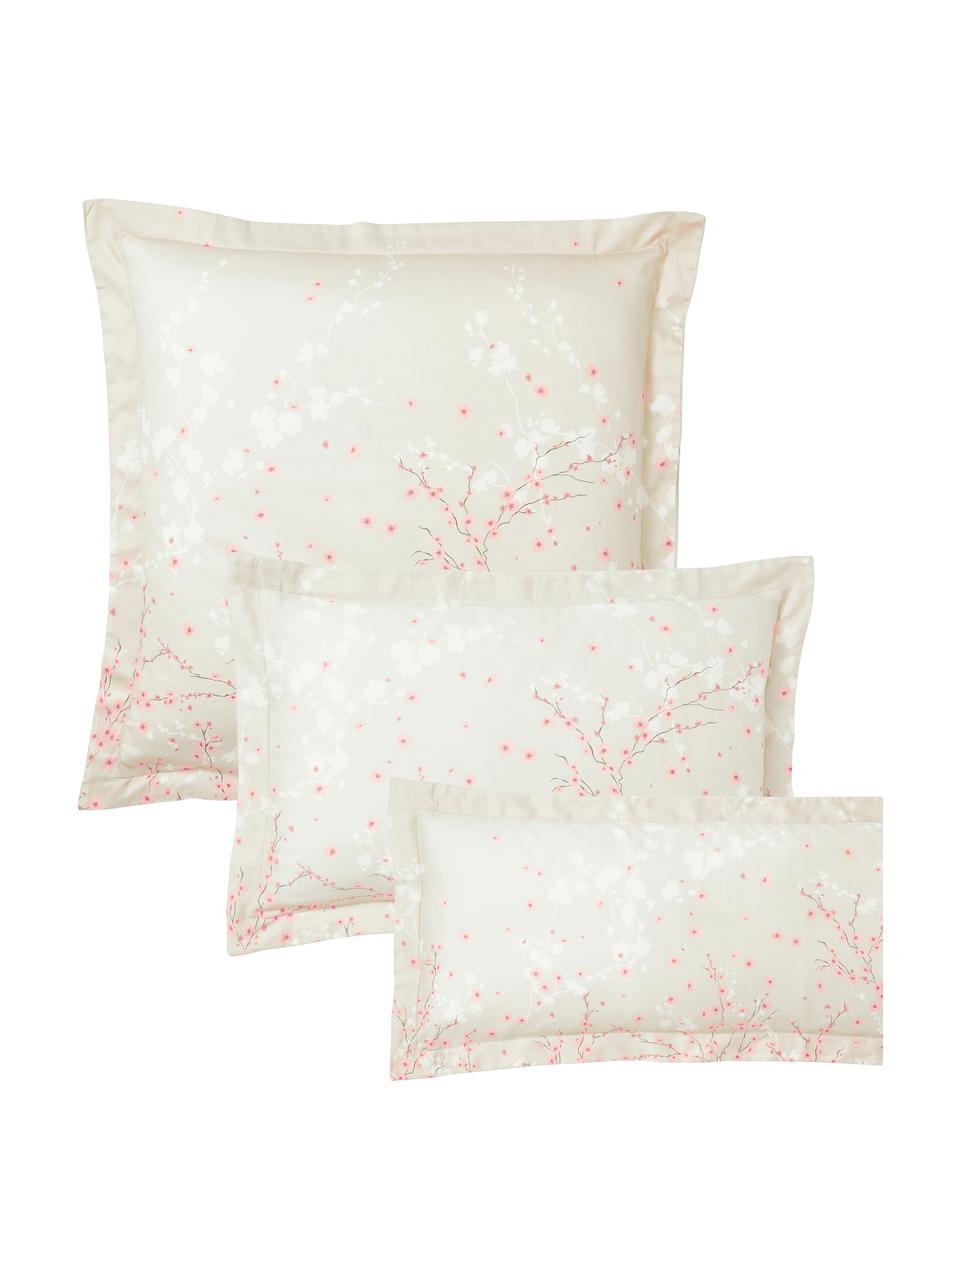 Poszewka na poduszkę z satyny bawełnianej Sakura, Beżowy, we wzór, S 40 x D 80 cm